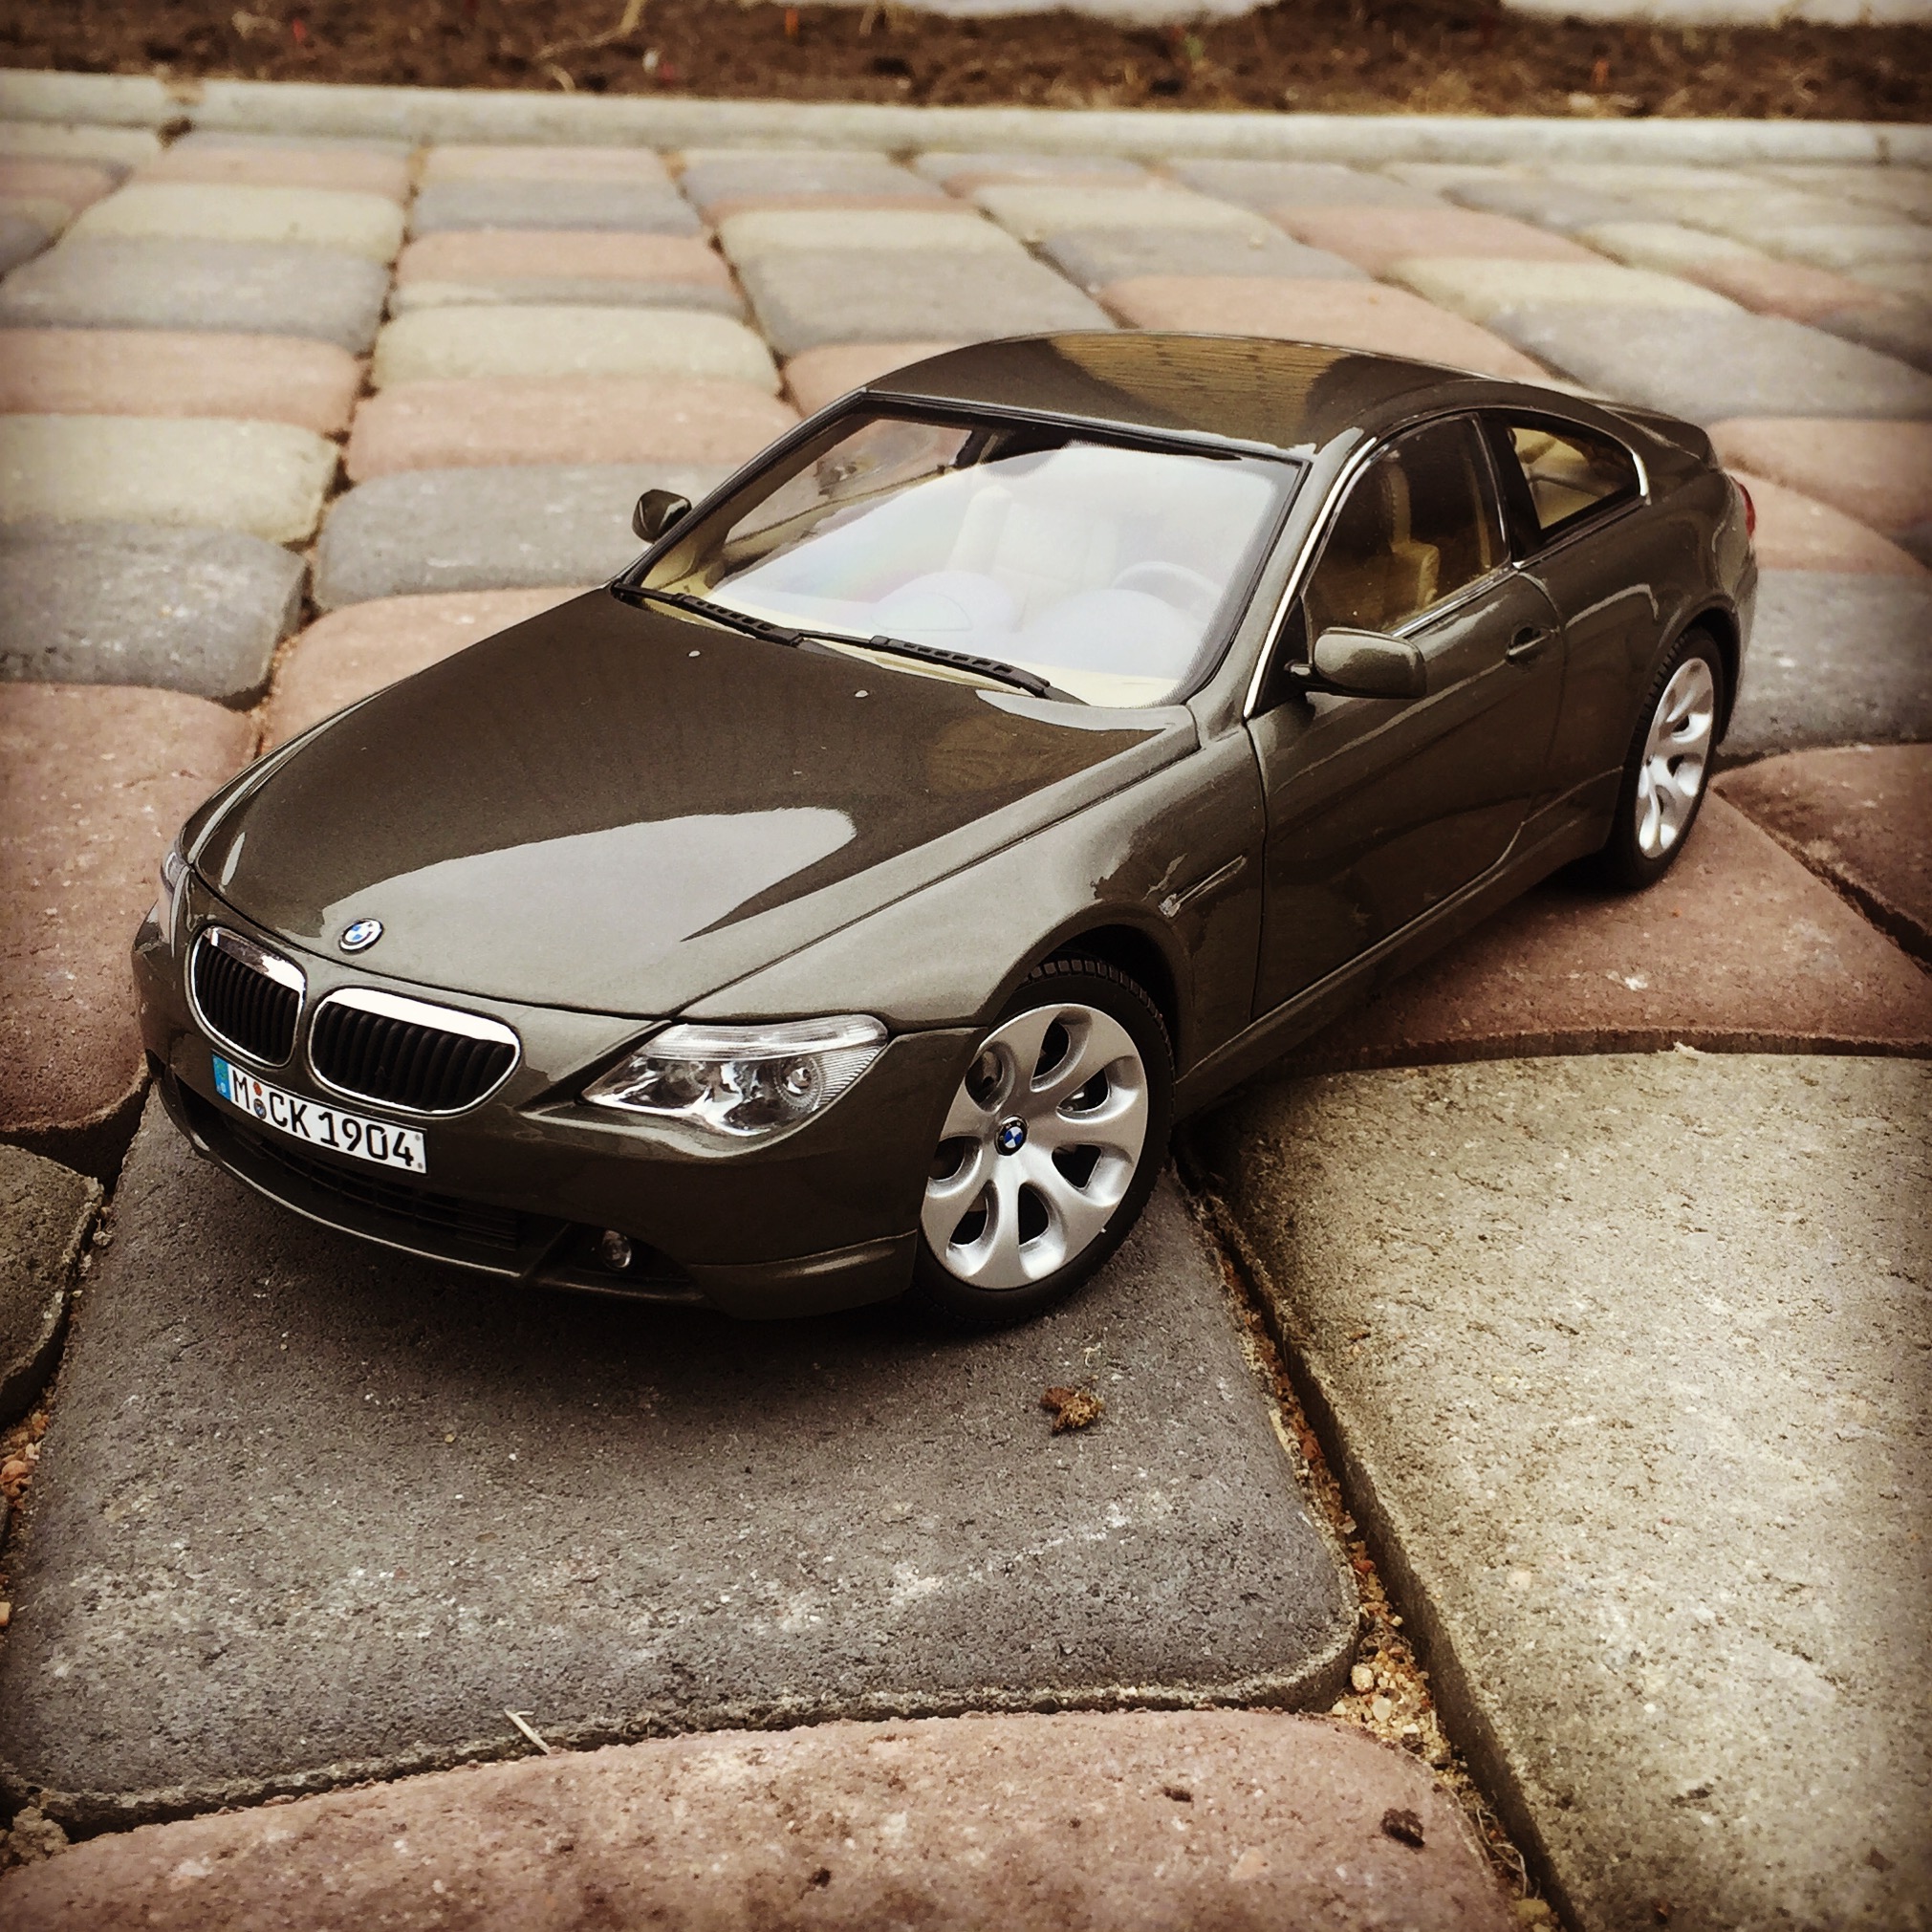 BMW 6 series coupe (E63) stratus grey (kyosho)